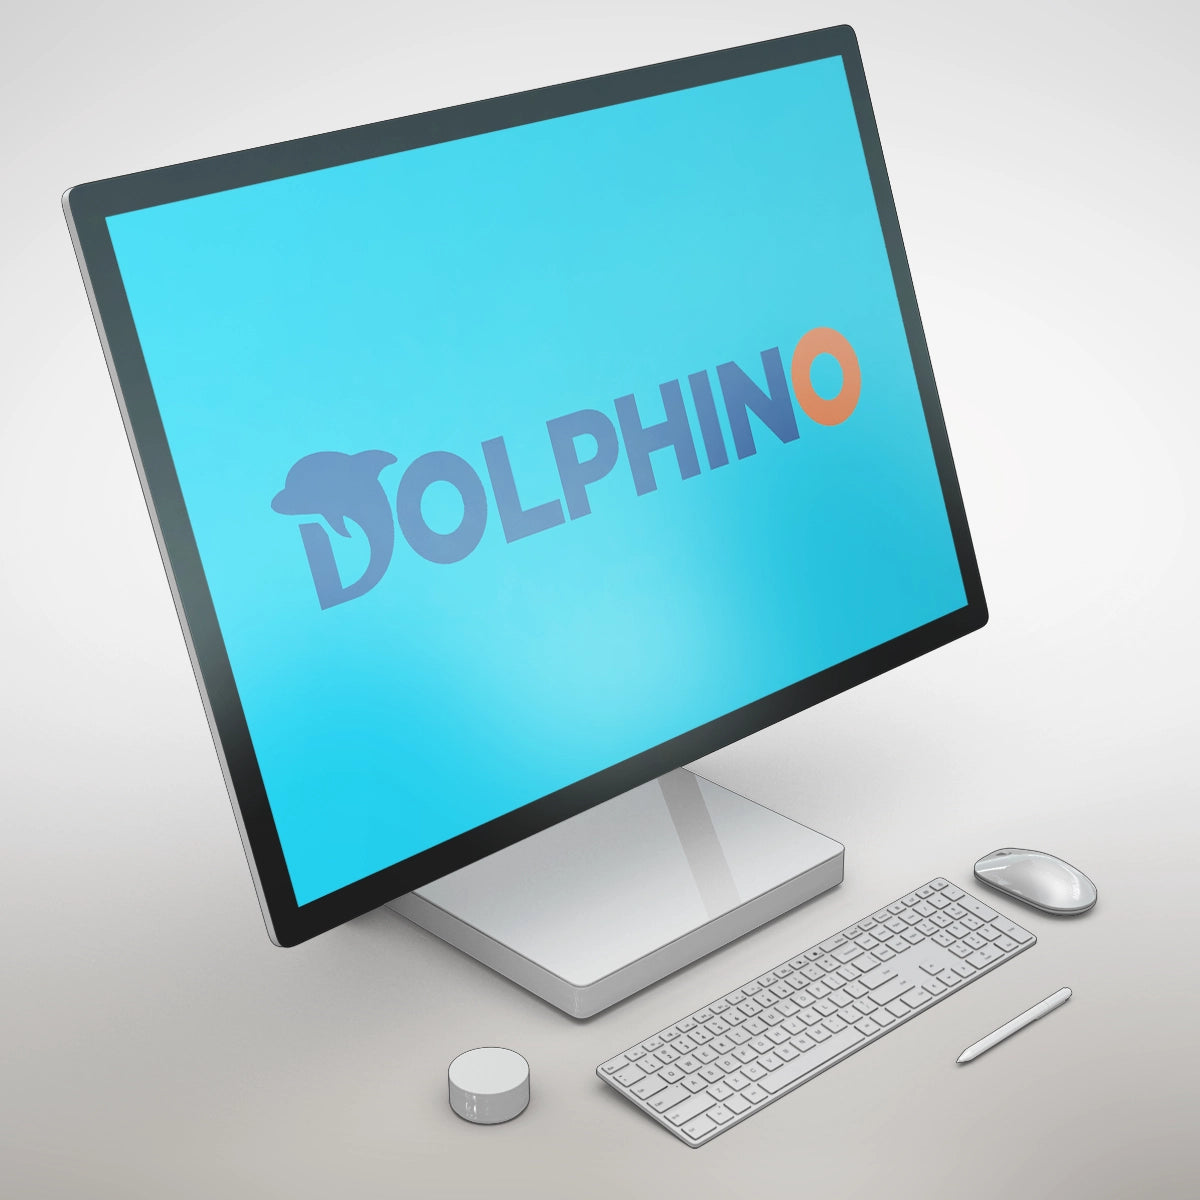 dolphino.com